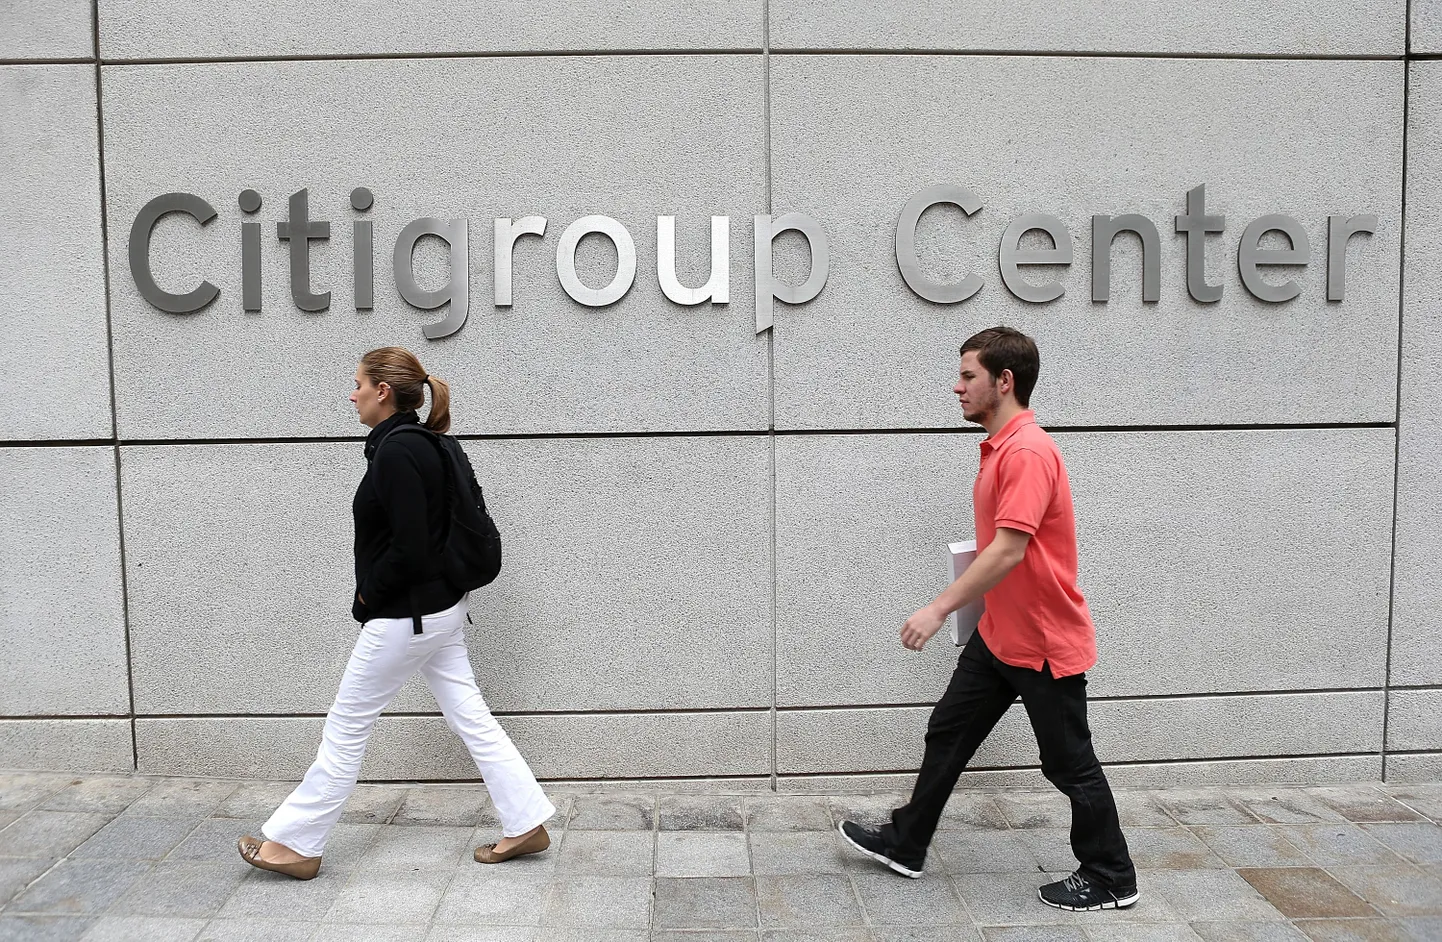 Ka USA Citigroup on andnud teiste pankade kohta minipuleerimisteavet.